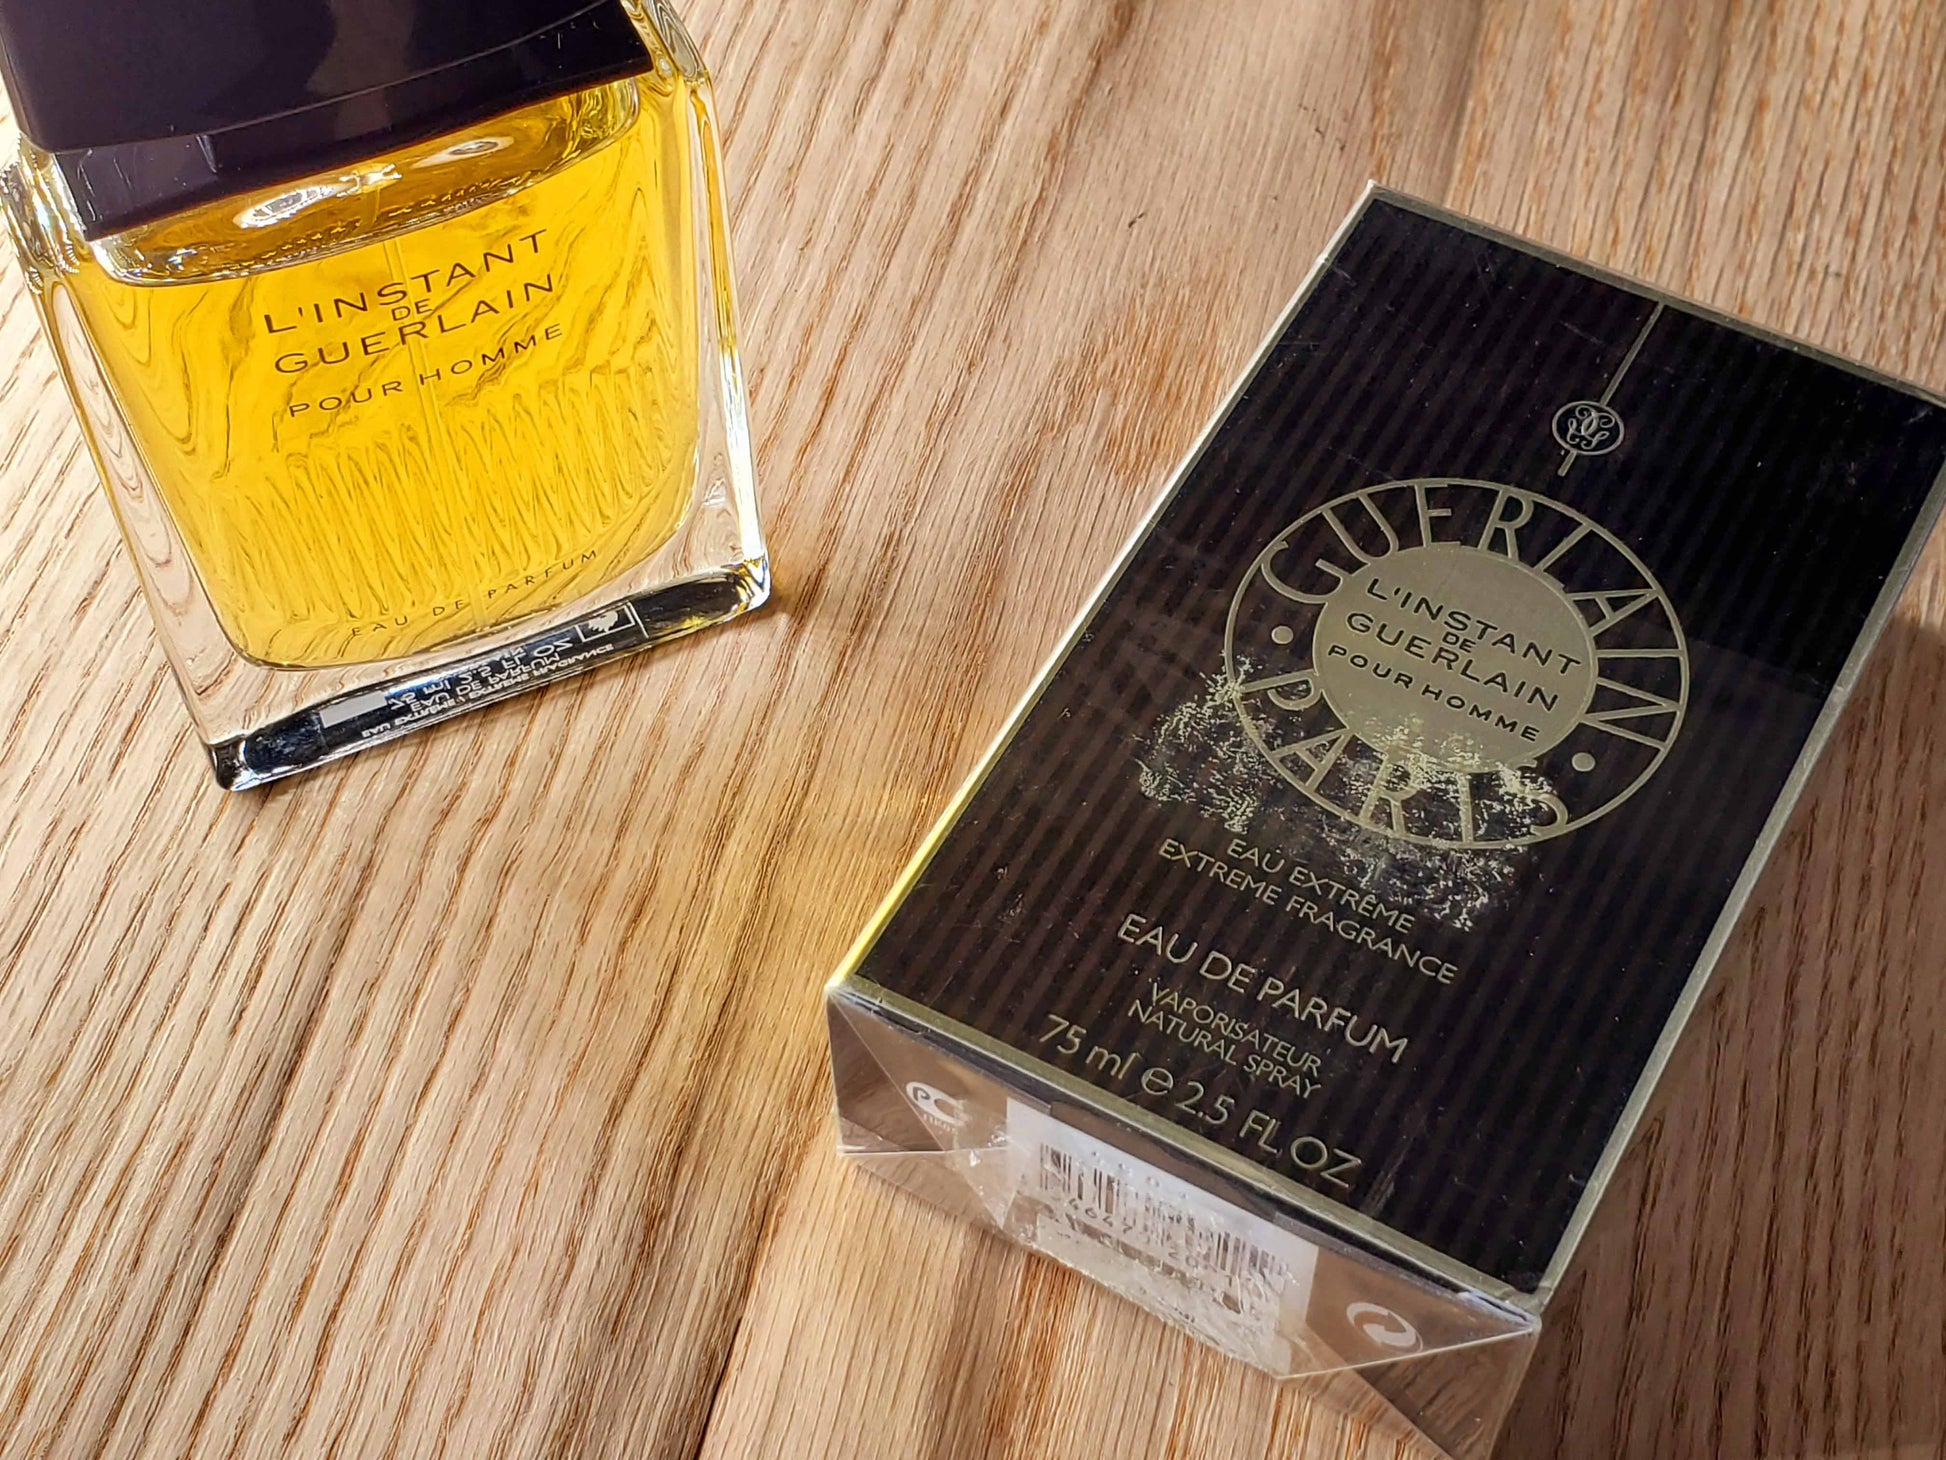 L'Instant de Guerlain Pour Homme Eau Extreme Vintage - Perfumani